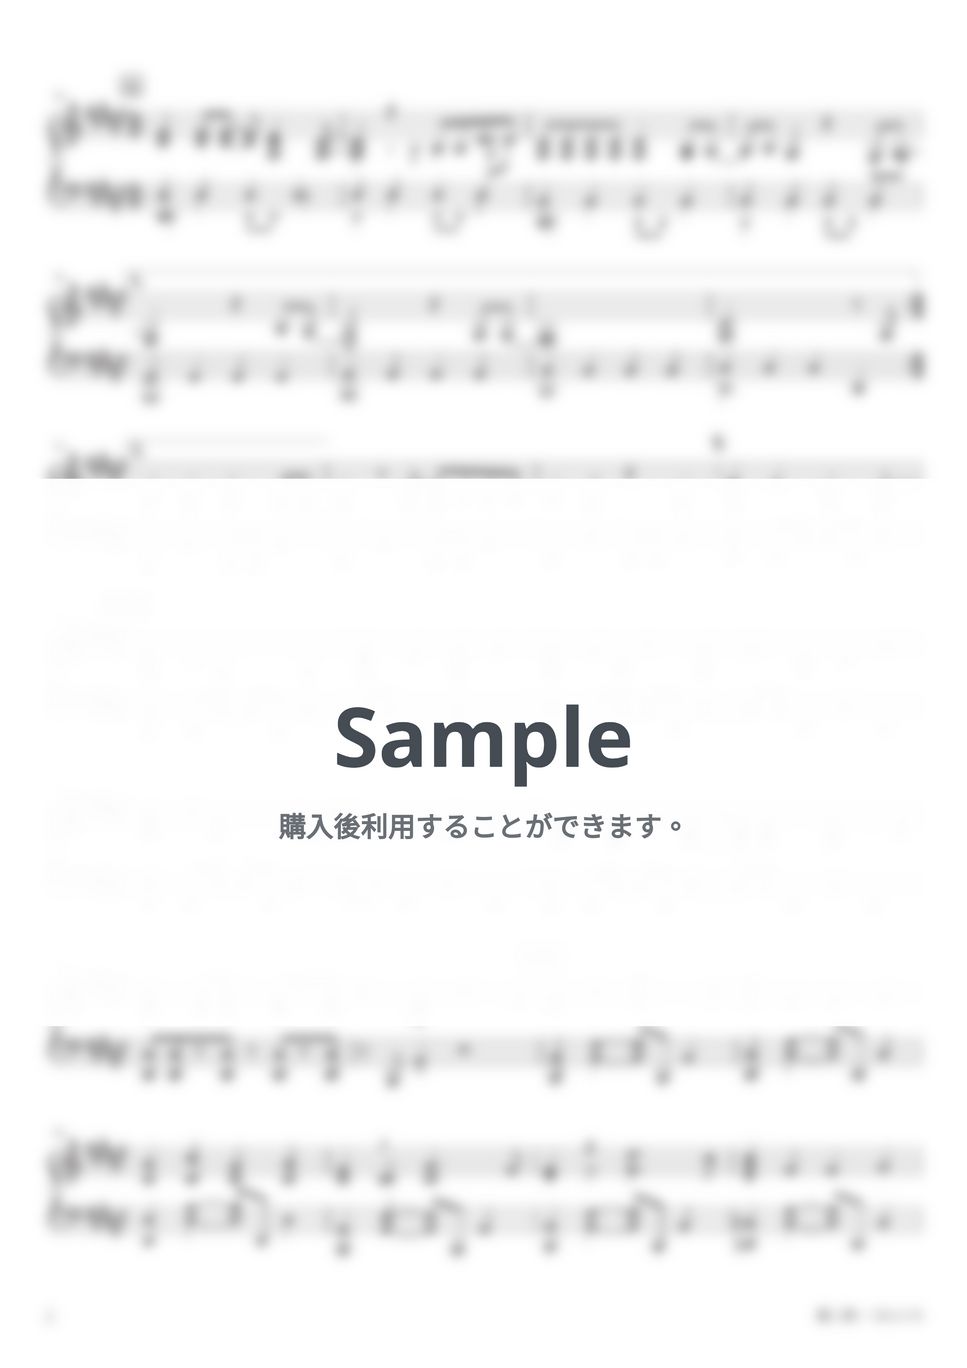 ヨルシカ - 藍二乗 (PianoSolo) by 深根 / Fukane